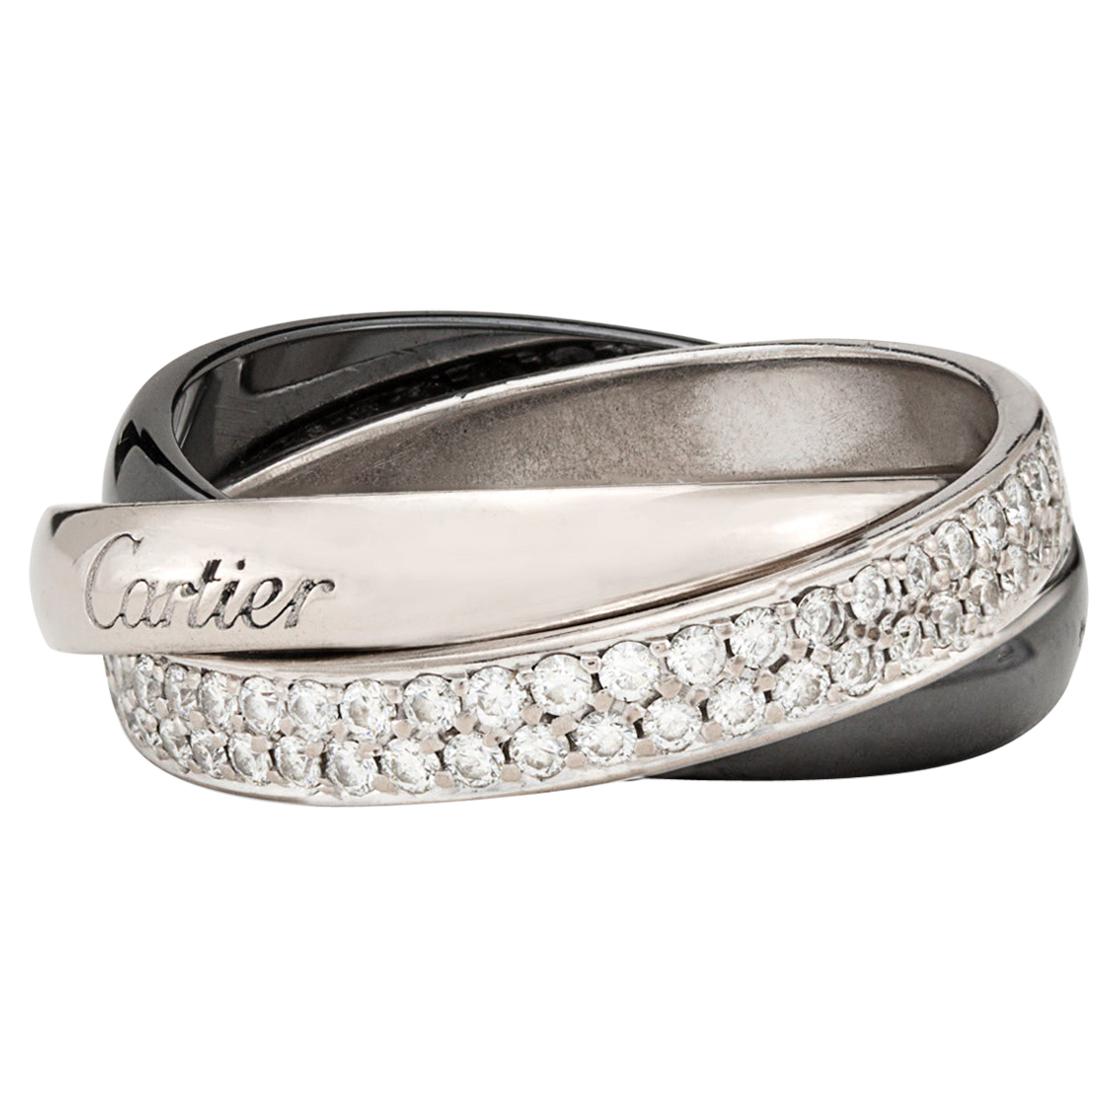 Cartier Diamond and Ceramic Trinity Ring